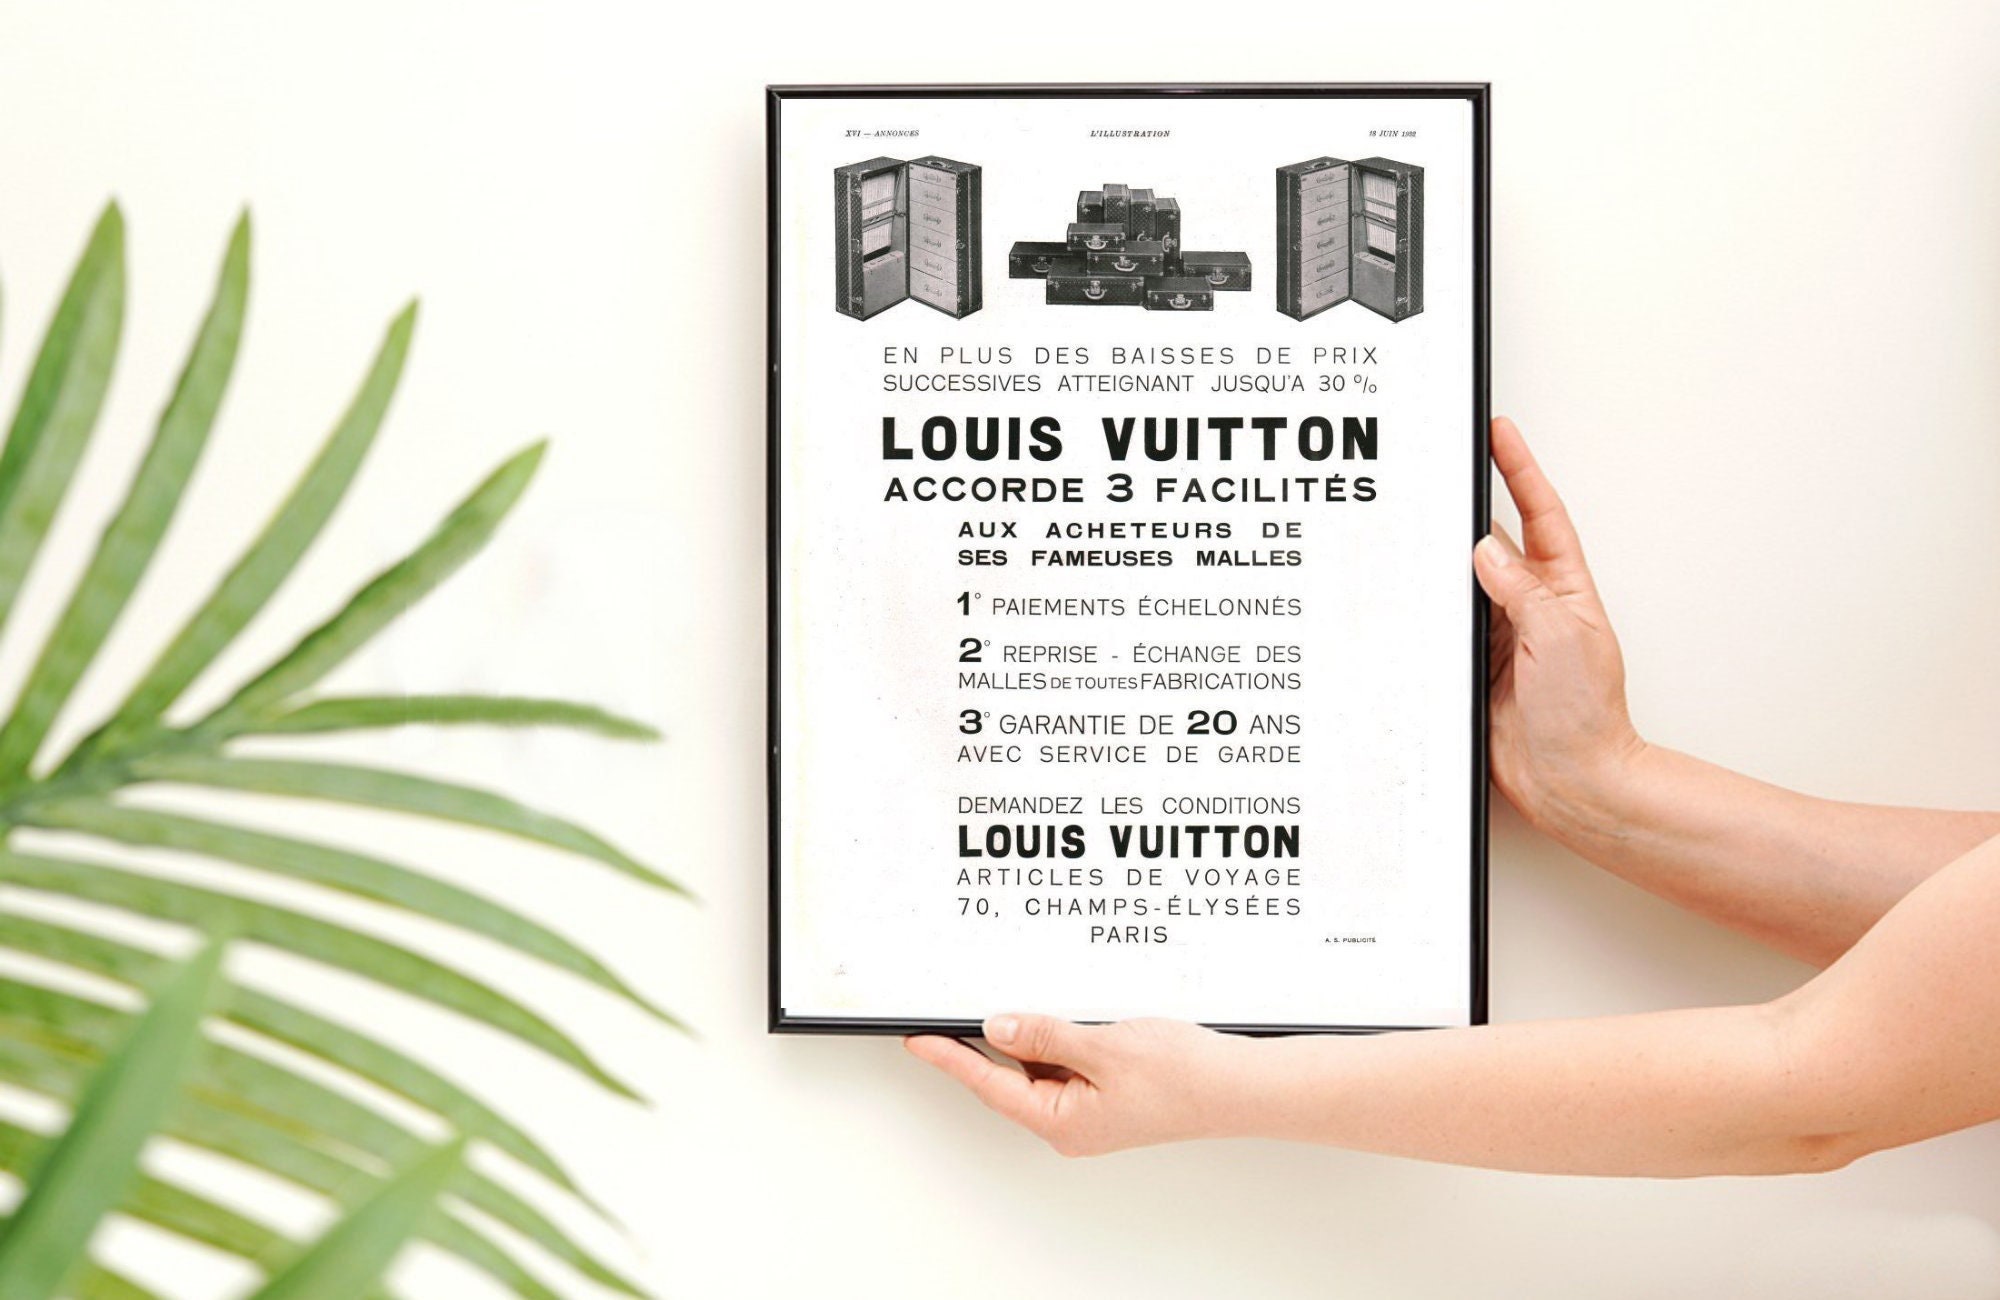 Louis Vuitton logo - Wall Art, Hanging Wall Decor, Home Decor - Arteebo